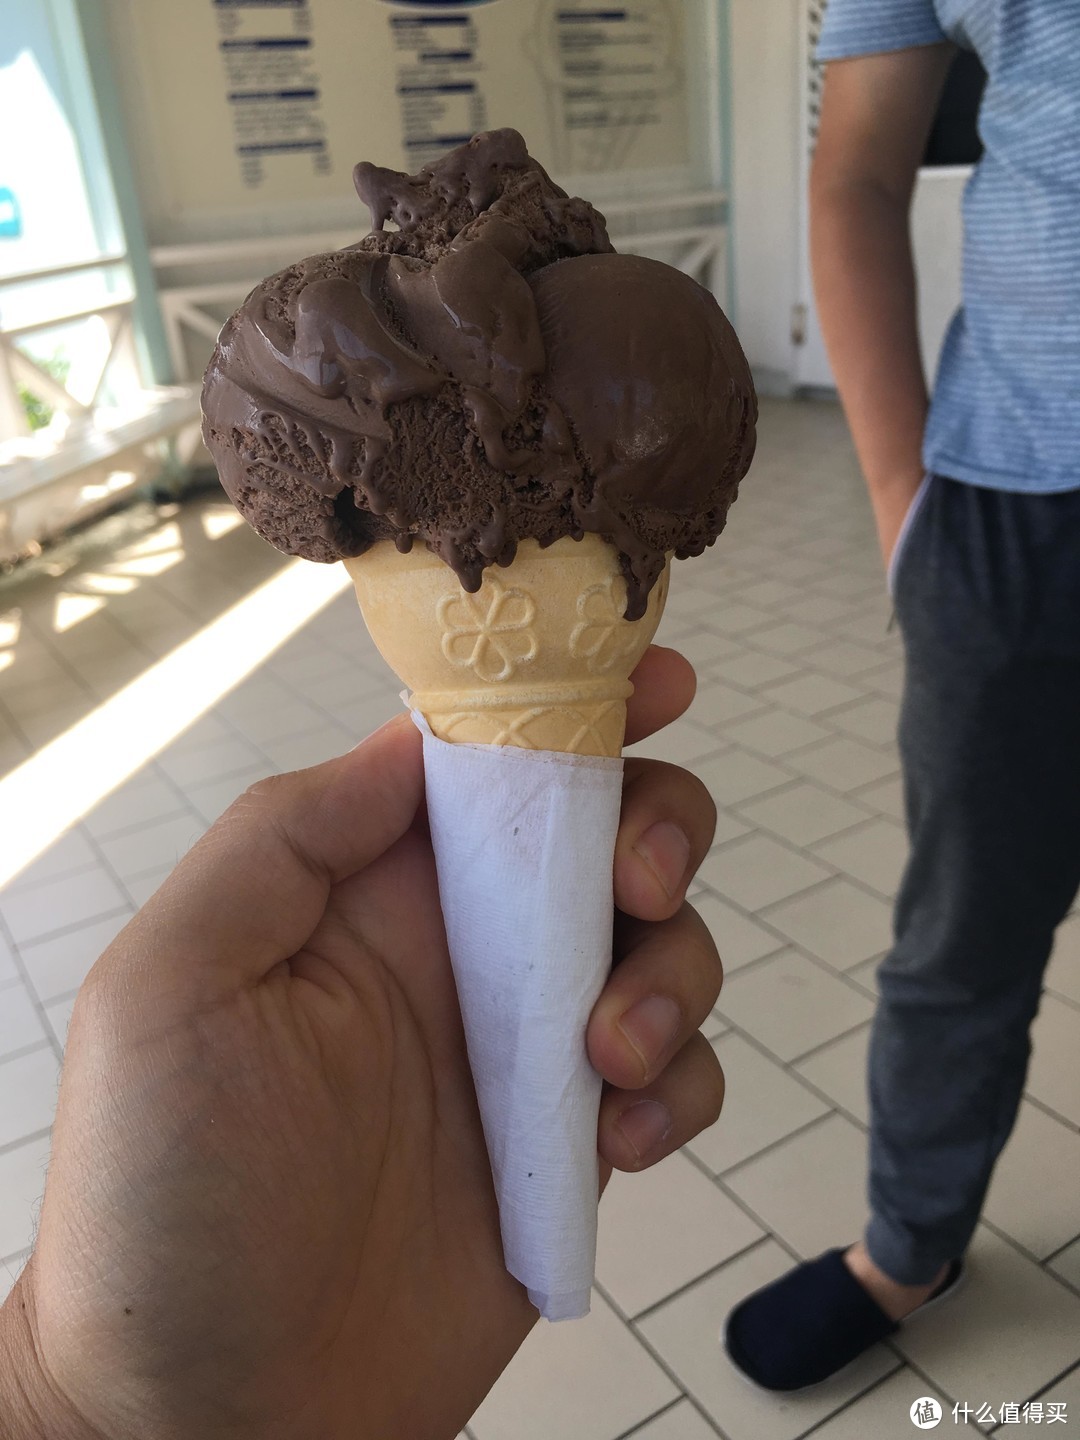 一级棒的冰淇淋